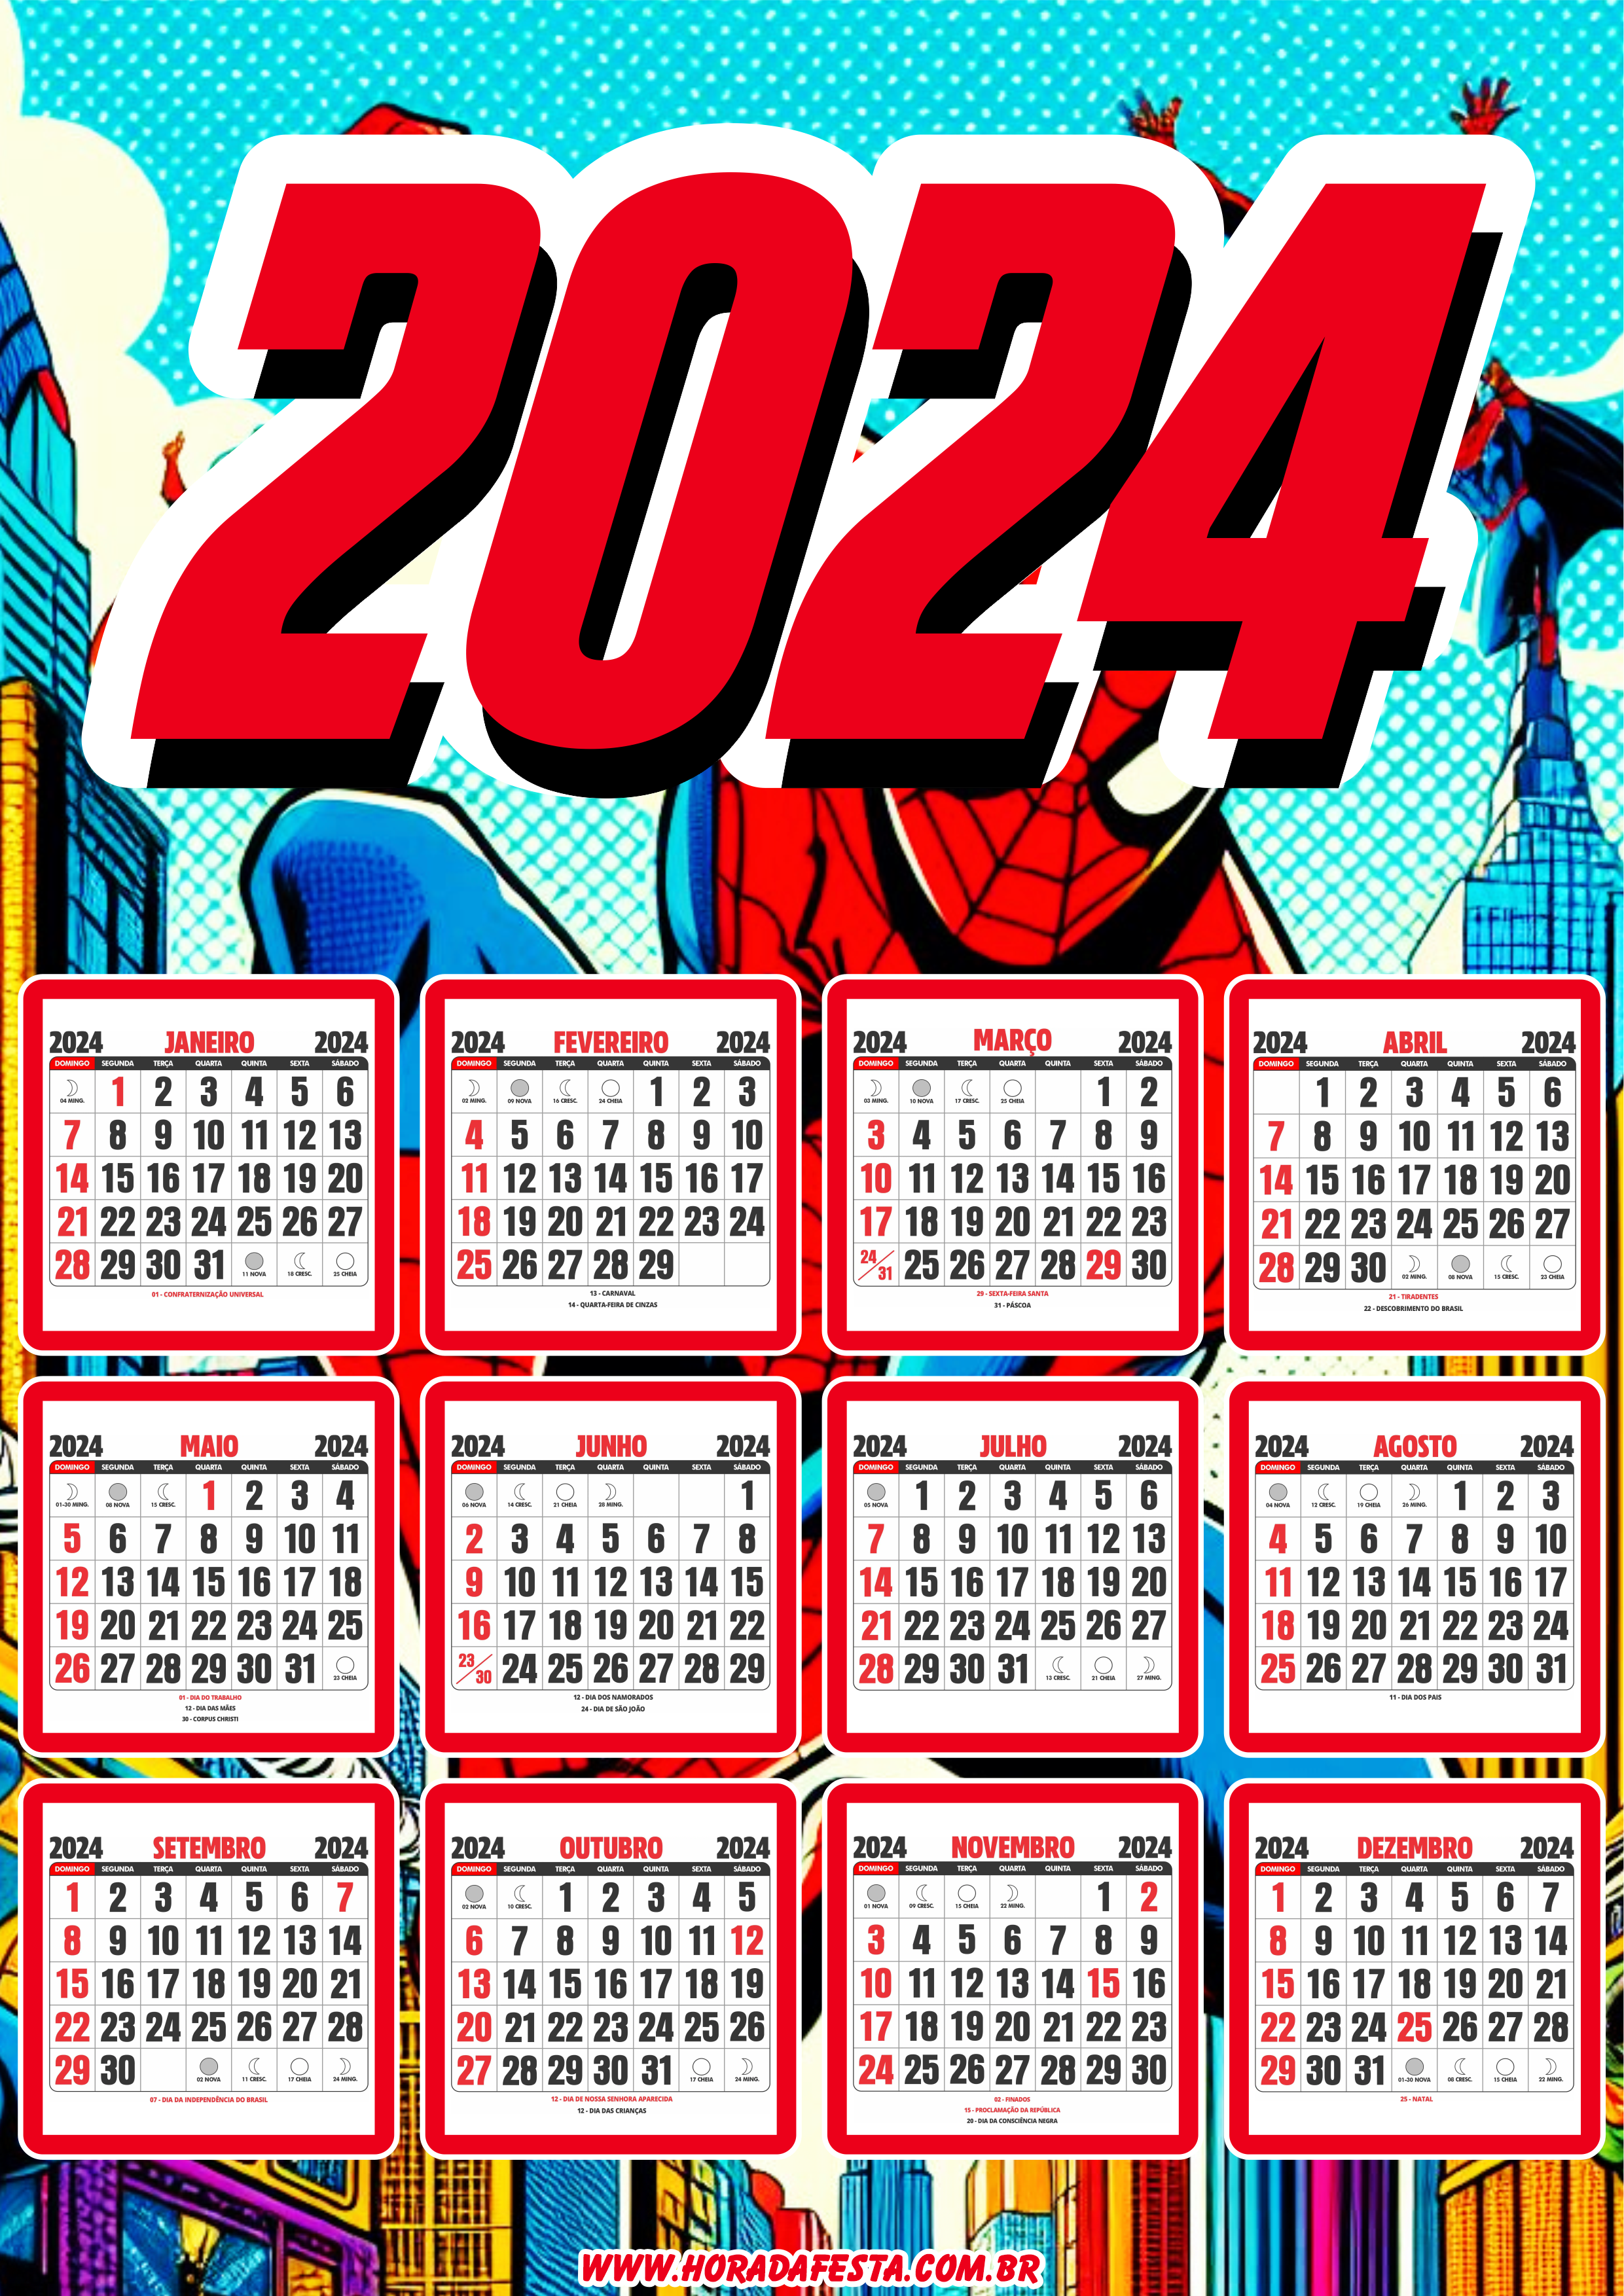 Calendário 2024 personalizado Marvel Super Herói Homem Aranha artes gráficas design png